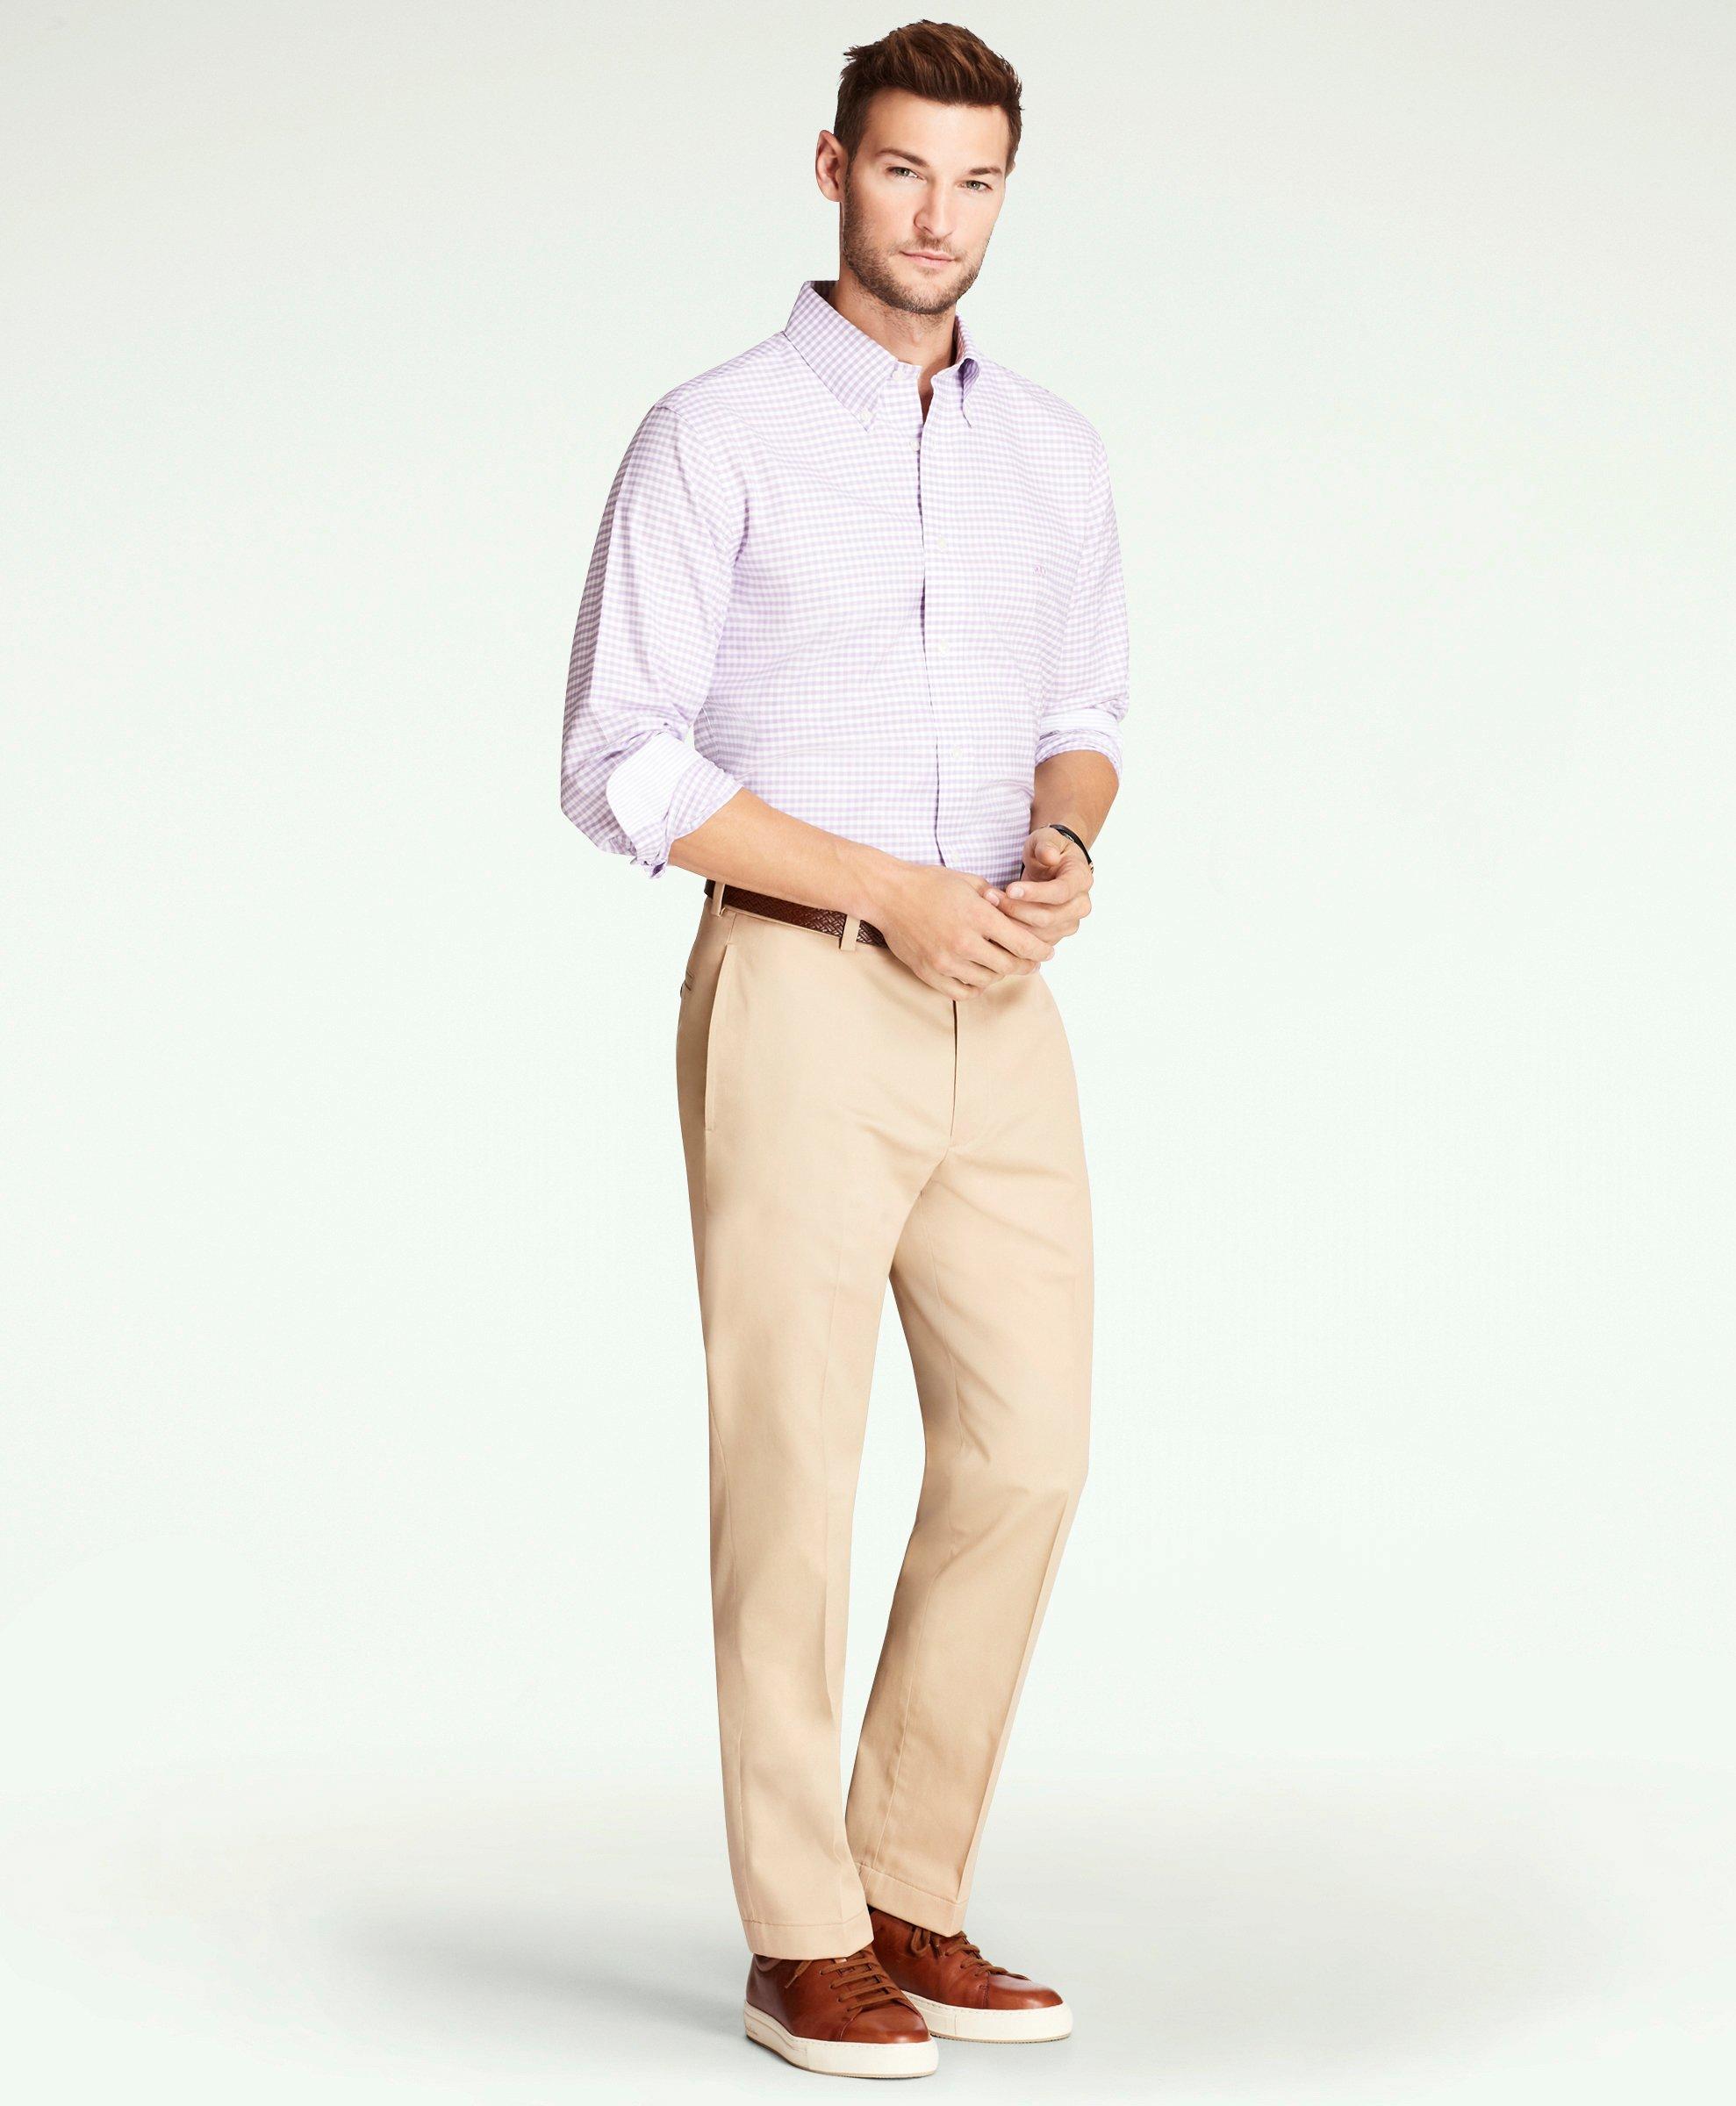 Men Elegant Shirt and Trouser for Office Wear Mens Formal Shirt